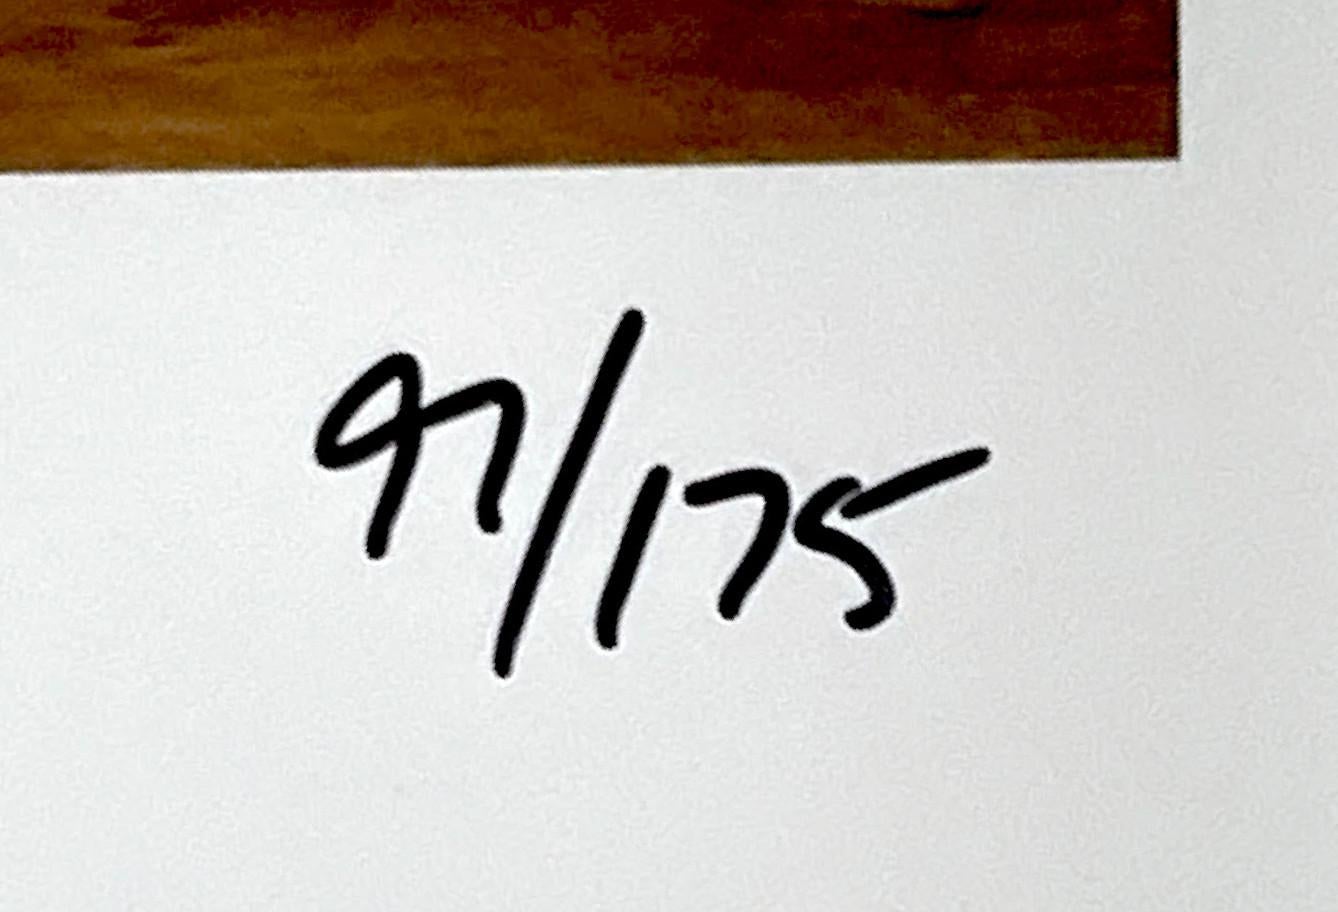 Mario Testino
Julianne Moore à l'hôtel Crillon, Paris 2008, 2010
C.I.C.C. sur papier Fuji crystal archive supergloss
Signé et numéroté 97/175 au marqueur noir par Mario Testino au recto.
Cadre inclus : mat et encadré dans un cadre en bois blanc avec